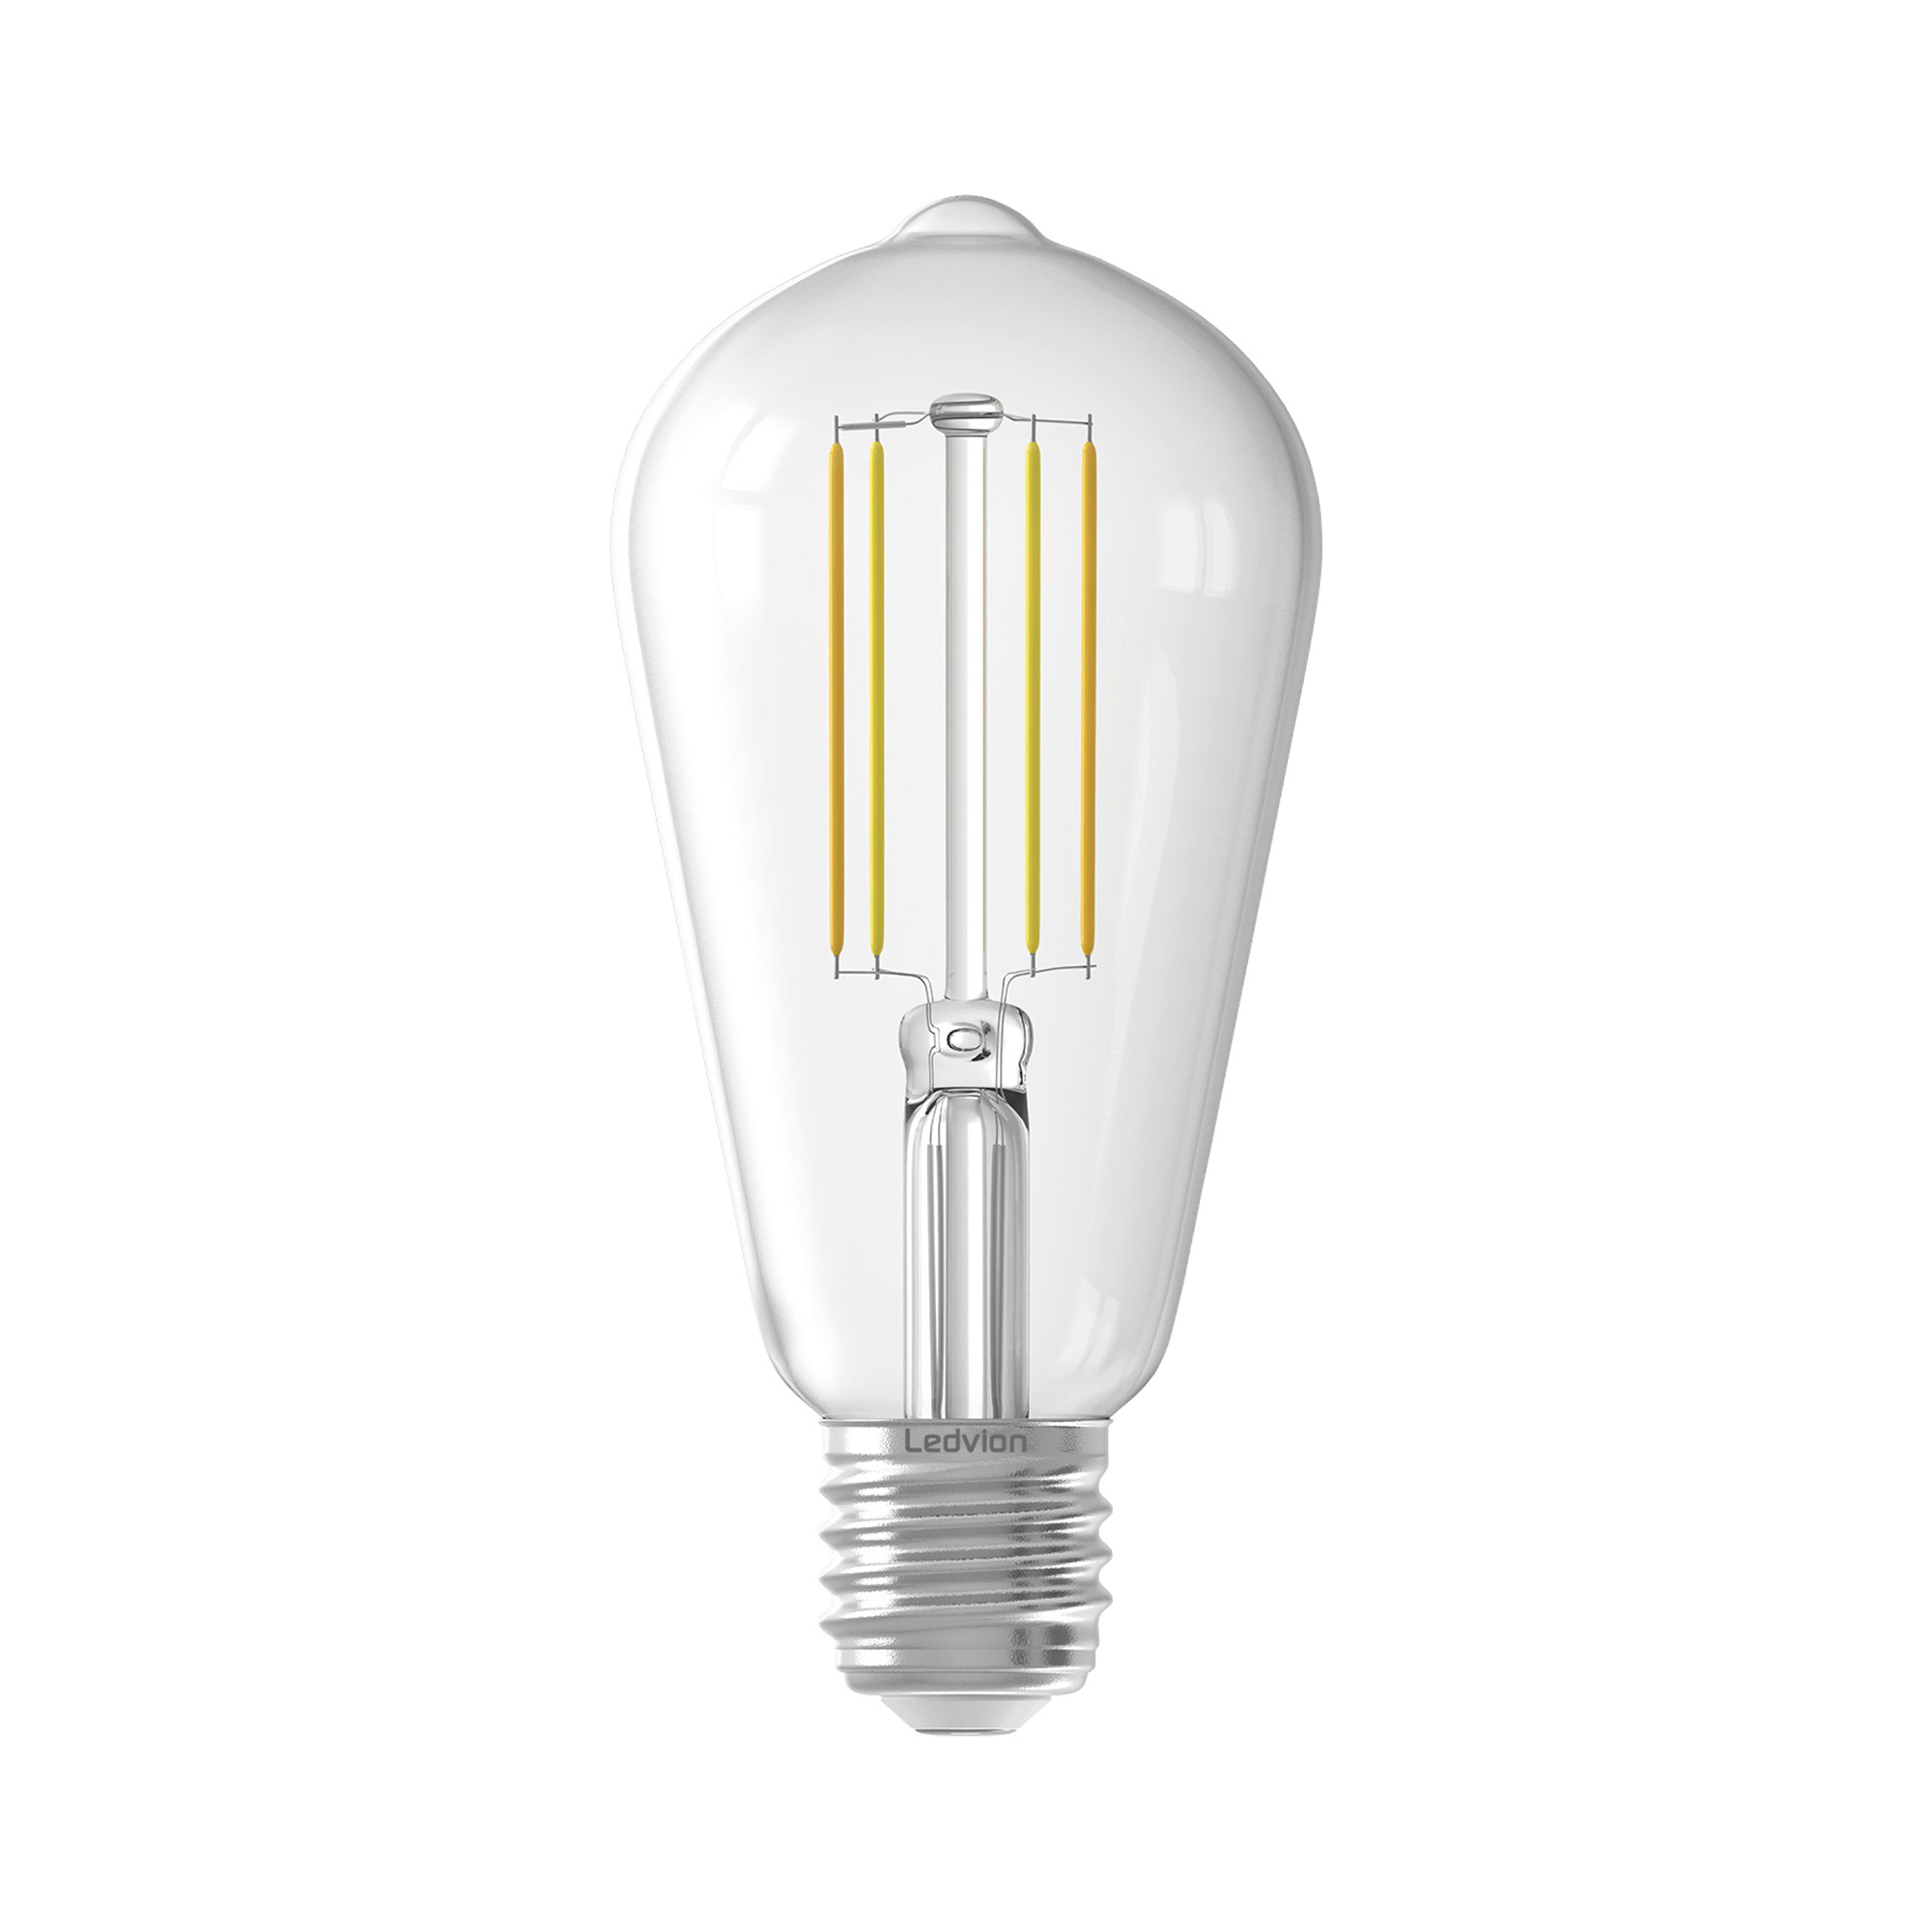 Ledvion Dimbare E27 LED Lamp - 4.5W - 2300K - 470 Lumen Lightexpert.nl